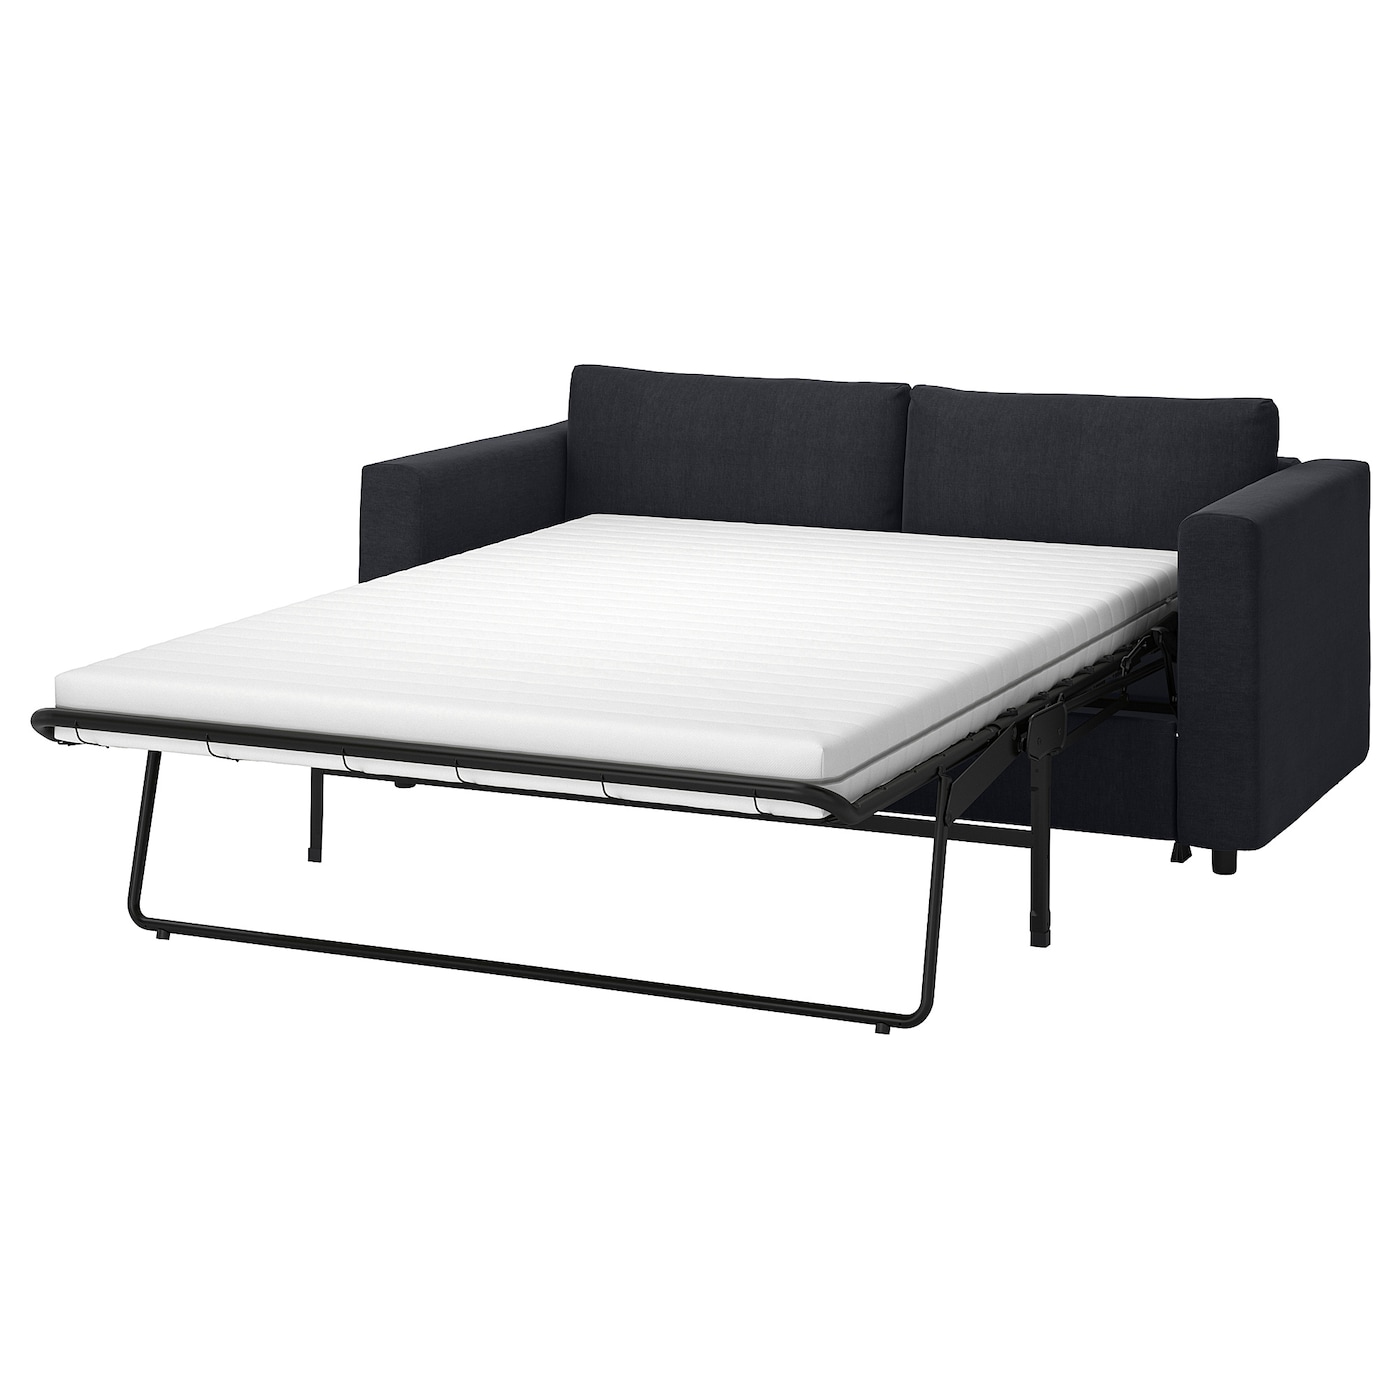 2-местный диван - IKEA VIMLE, 98x190см, черный, ВИМЛЕ ИКЕА